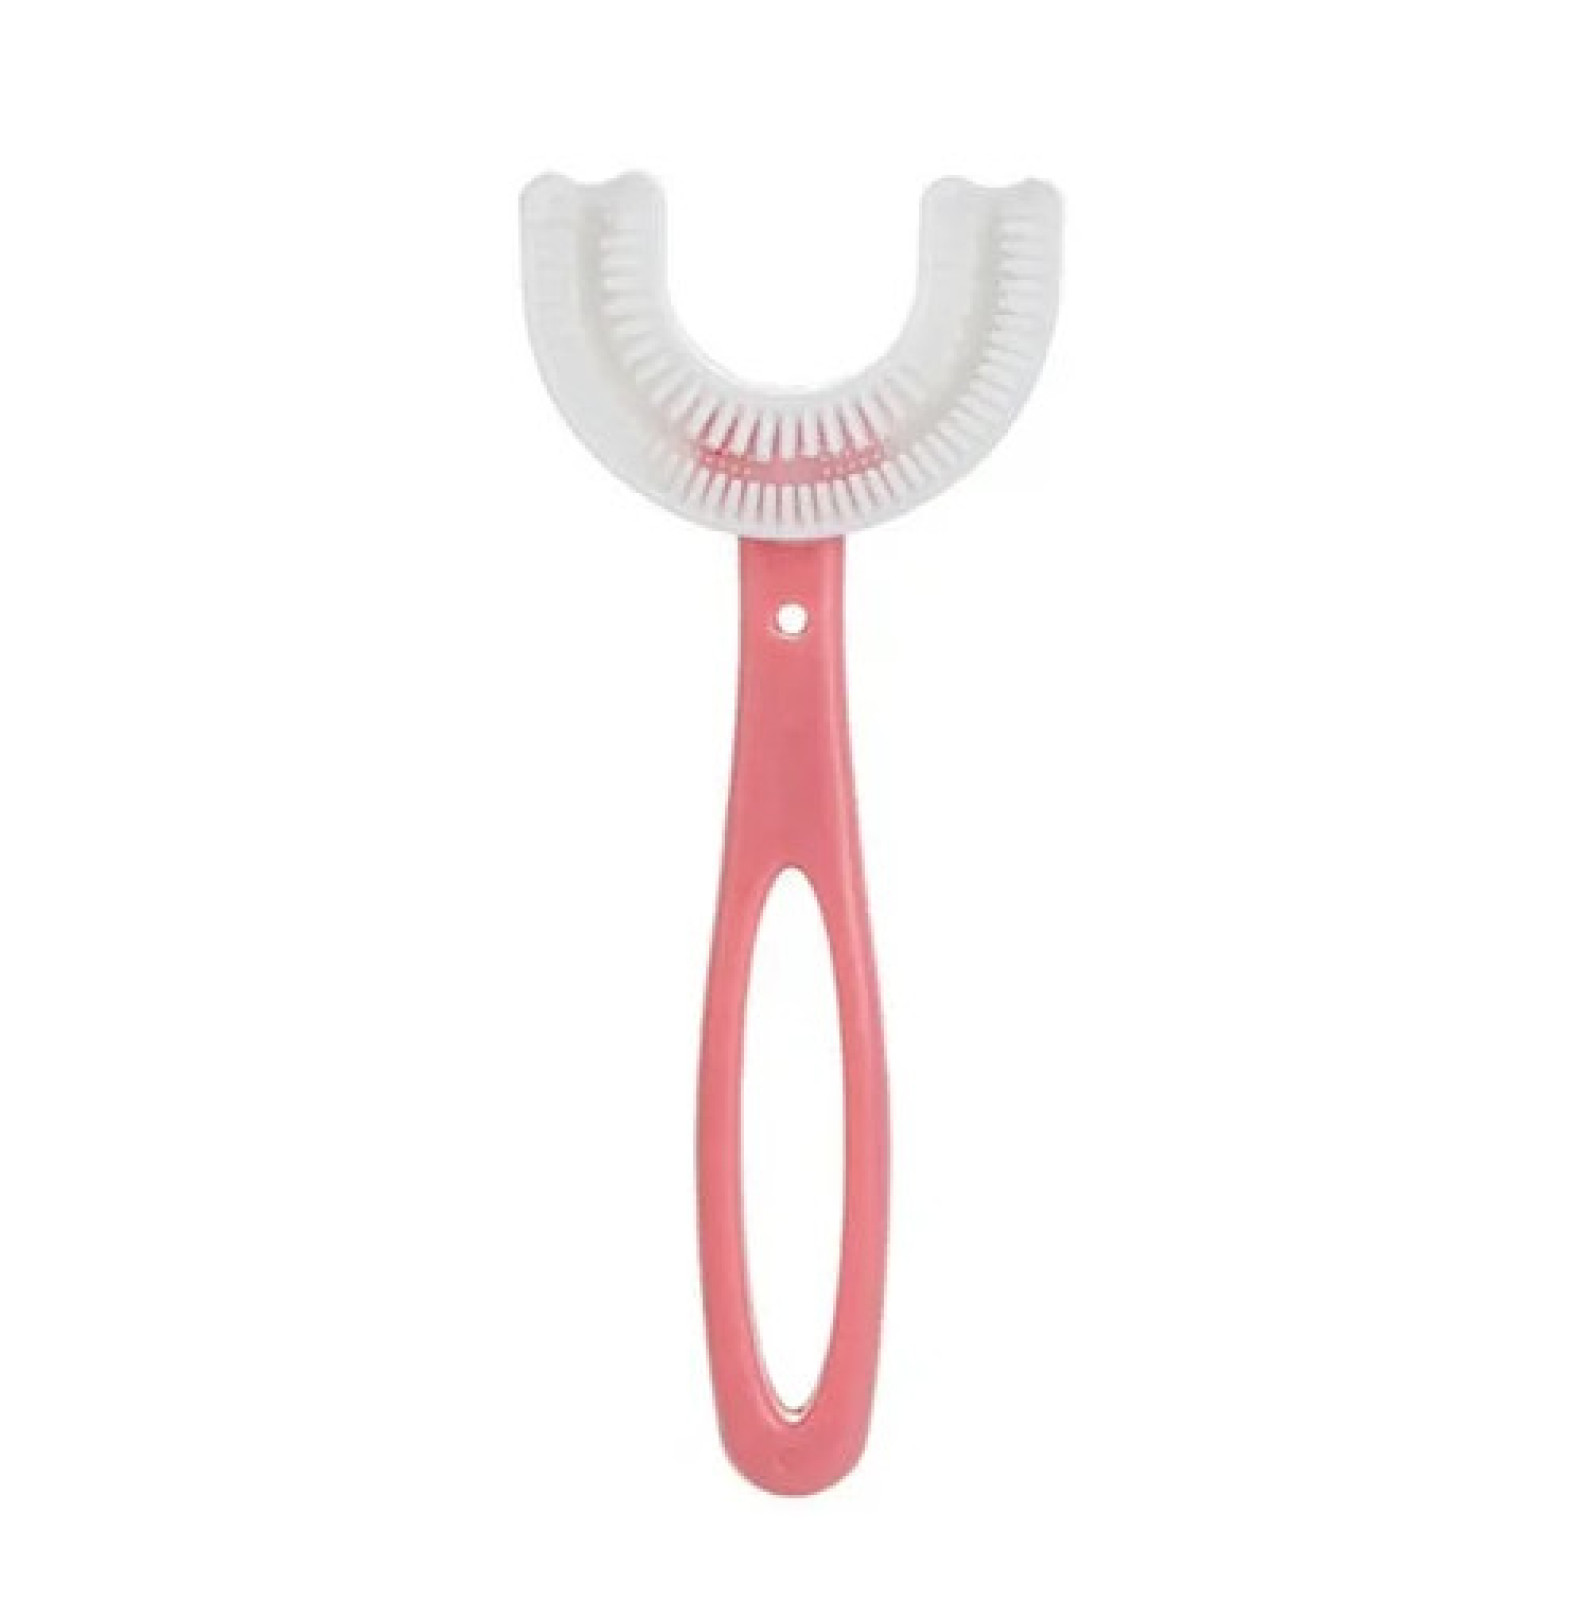 Детская U-образная зубная щетка children's u shaped toothbrush Розовая 201253